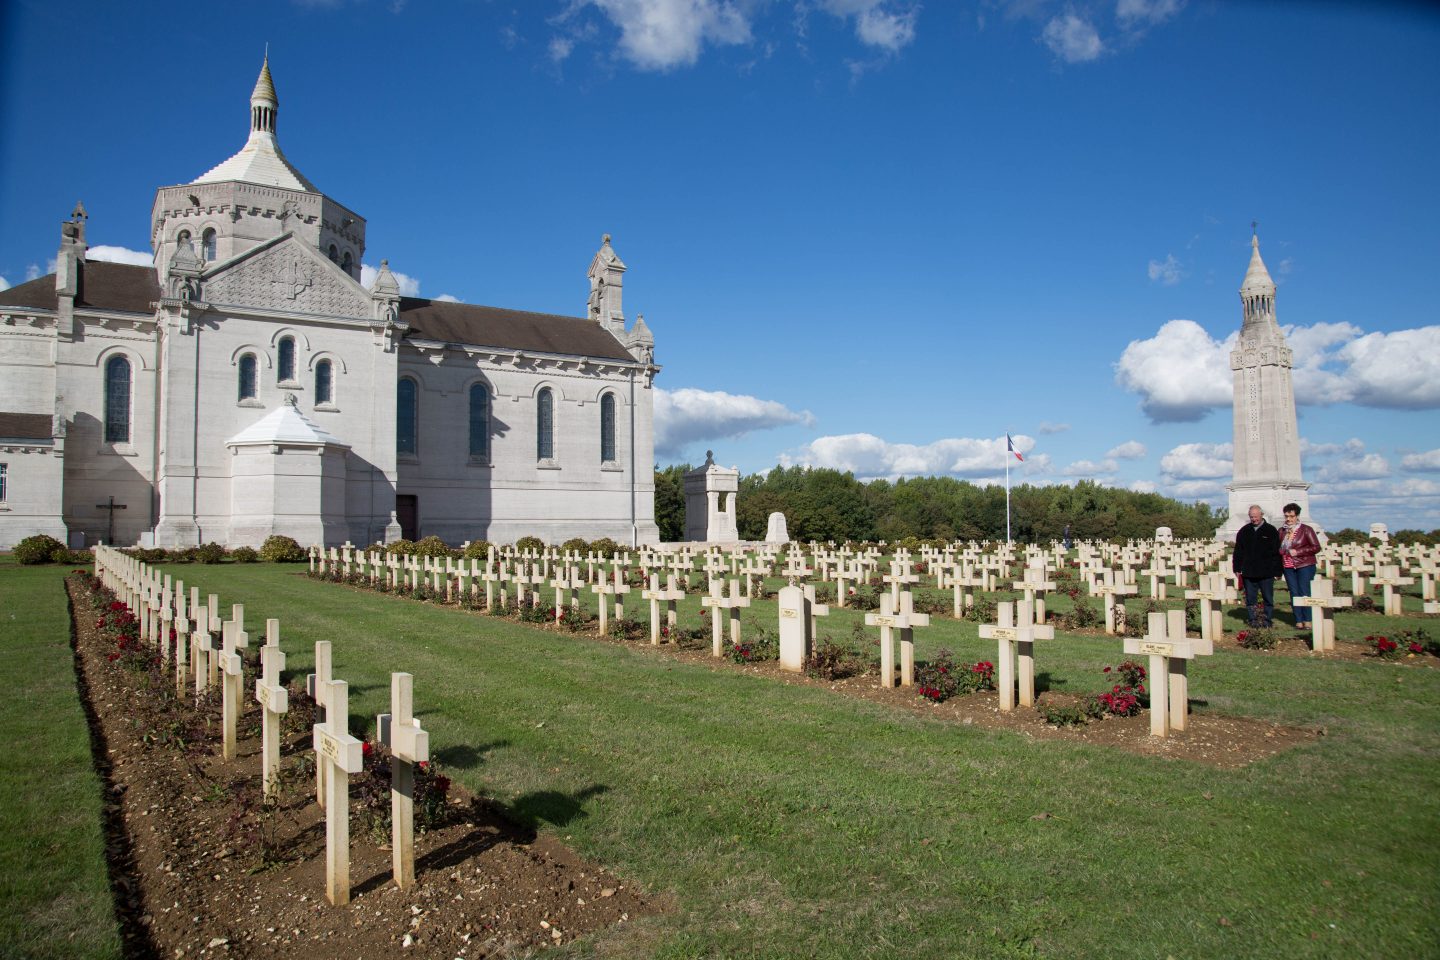 Nécropole Notre-Dame de Lorette, haut lieu de mémoire de la Première Guerre mondiale en Nord-Pas-de-Calais, inscrit à l'Unesco ©Aurélie Leclercq